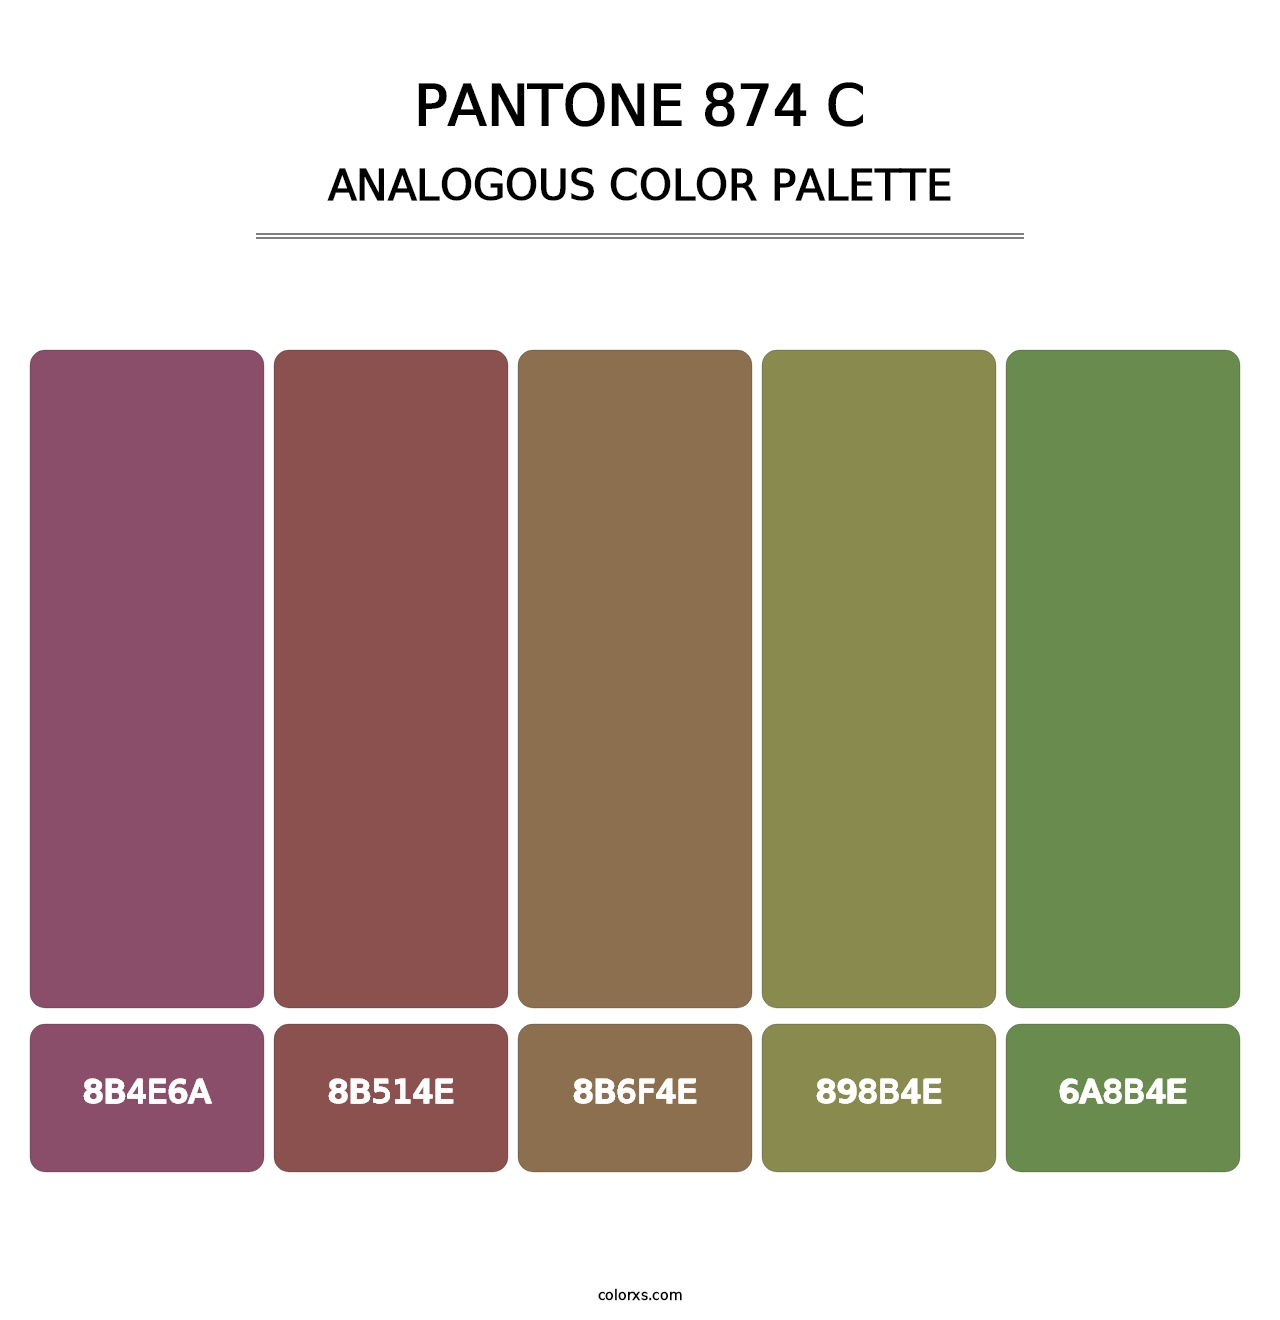 PANTONE 874 C - Analogous Color Palette